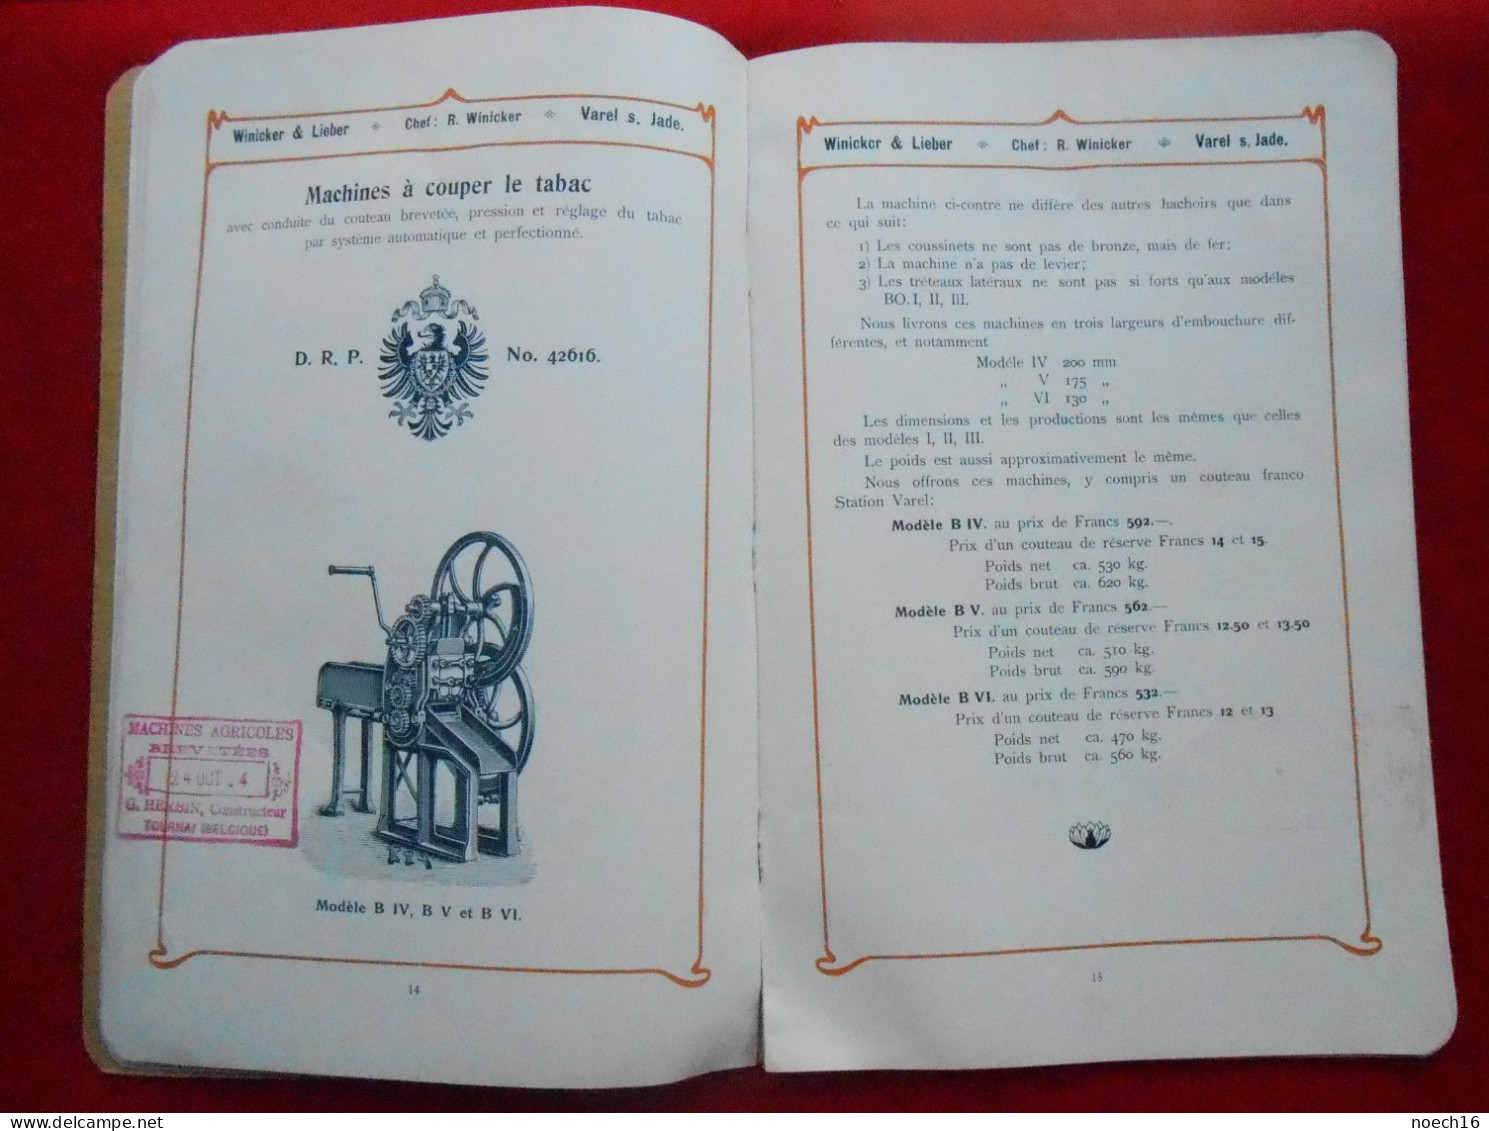 Catalogue Fonderie & Industrie Du Tabac Winicker & Lieber, Varel S. Jade, Allemagne/1904 Constructeur Herbin à Tournai - Lebensmittel